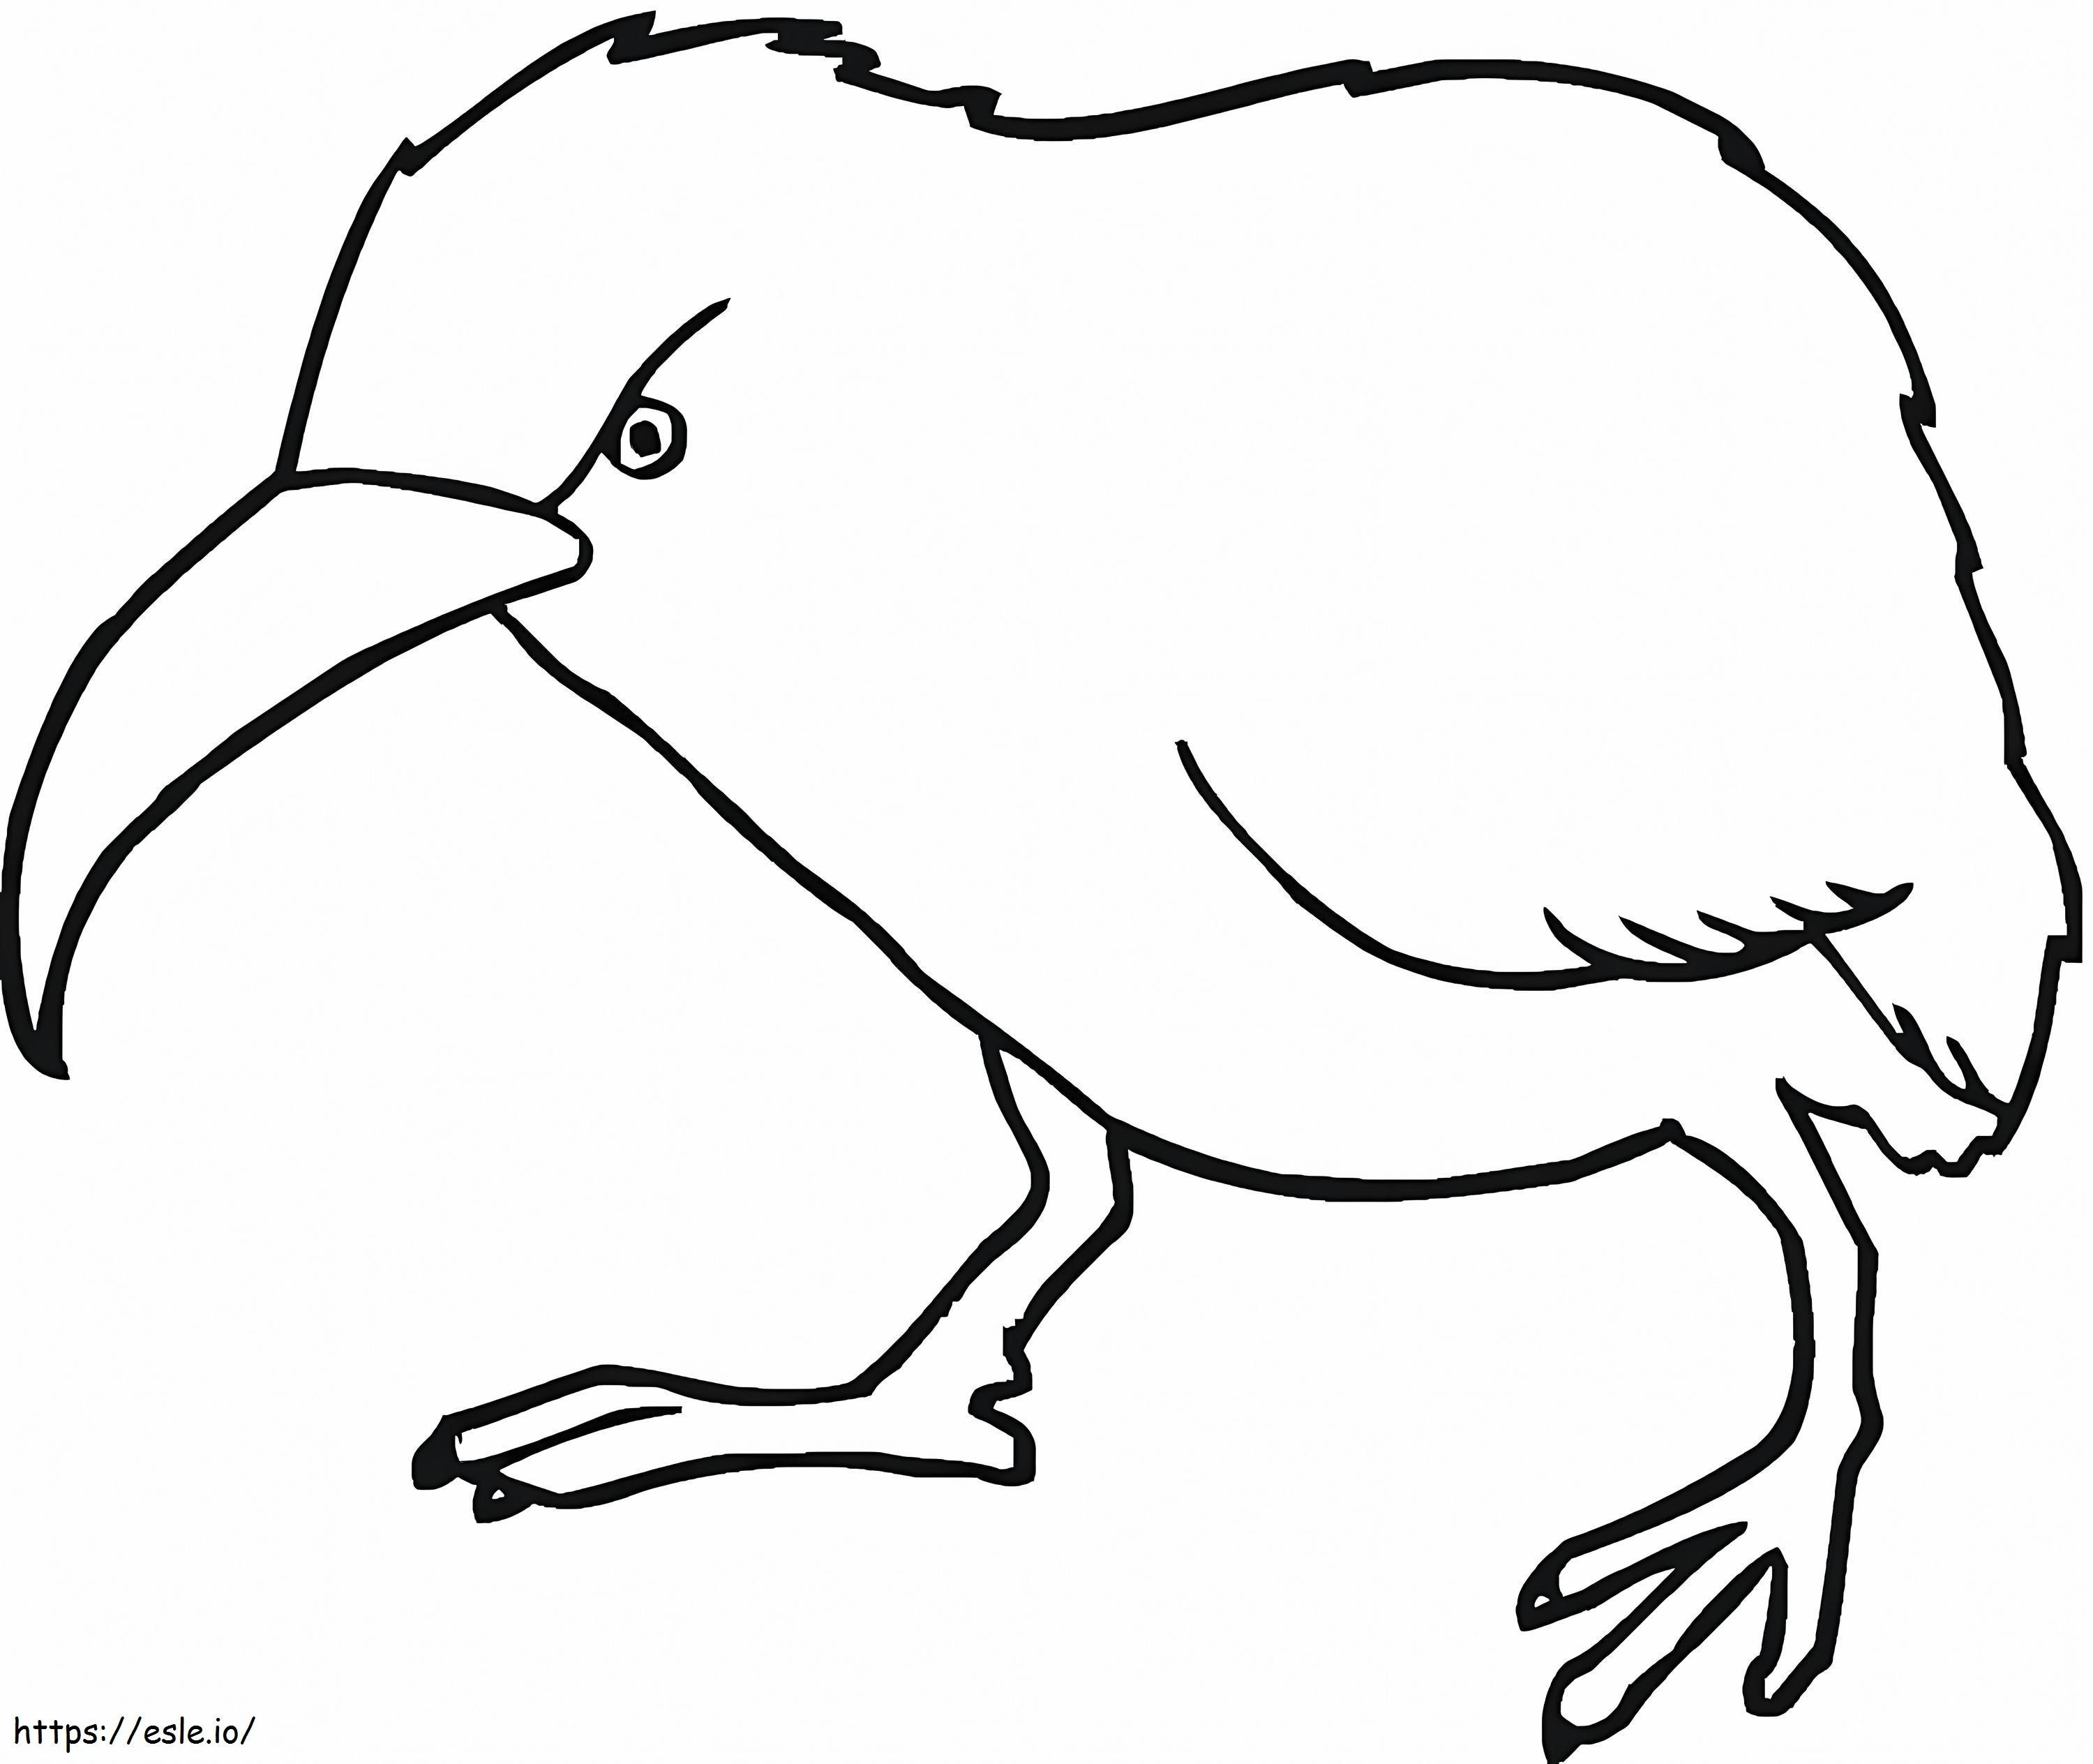 Boze Kiwivogel kleurplaat kleurplaat